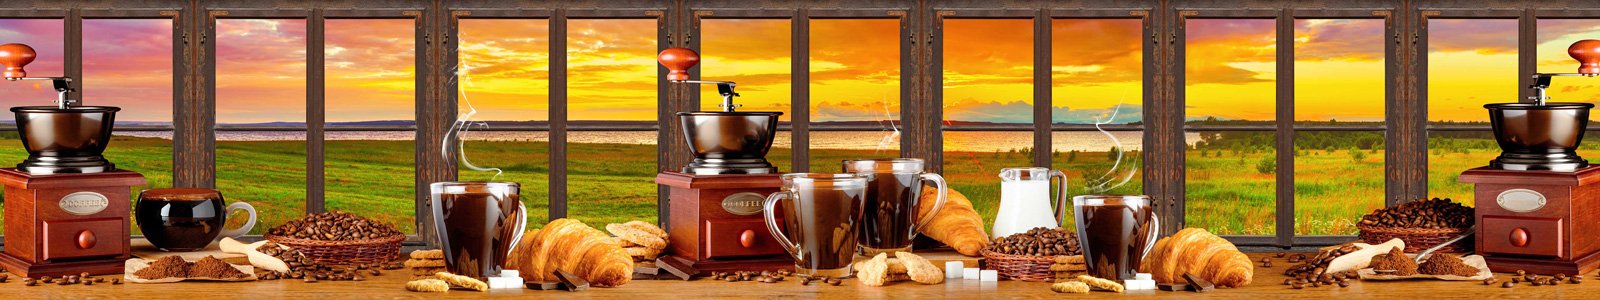 №6775 - Свежий кофе и круассаны на столе с видом на закат